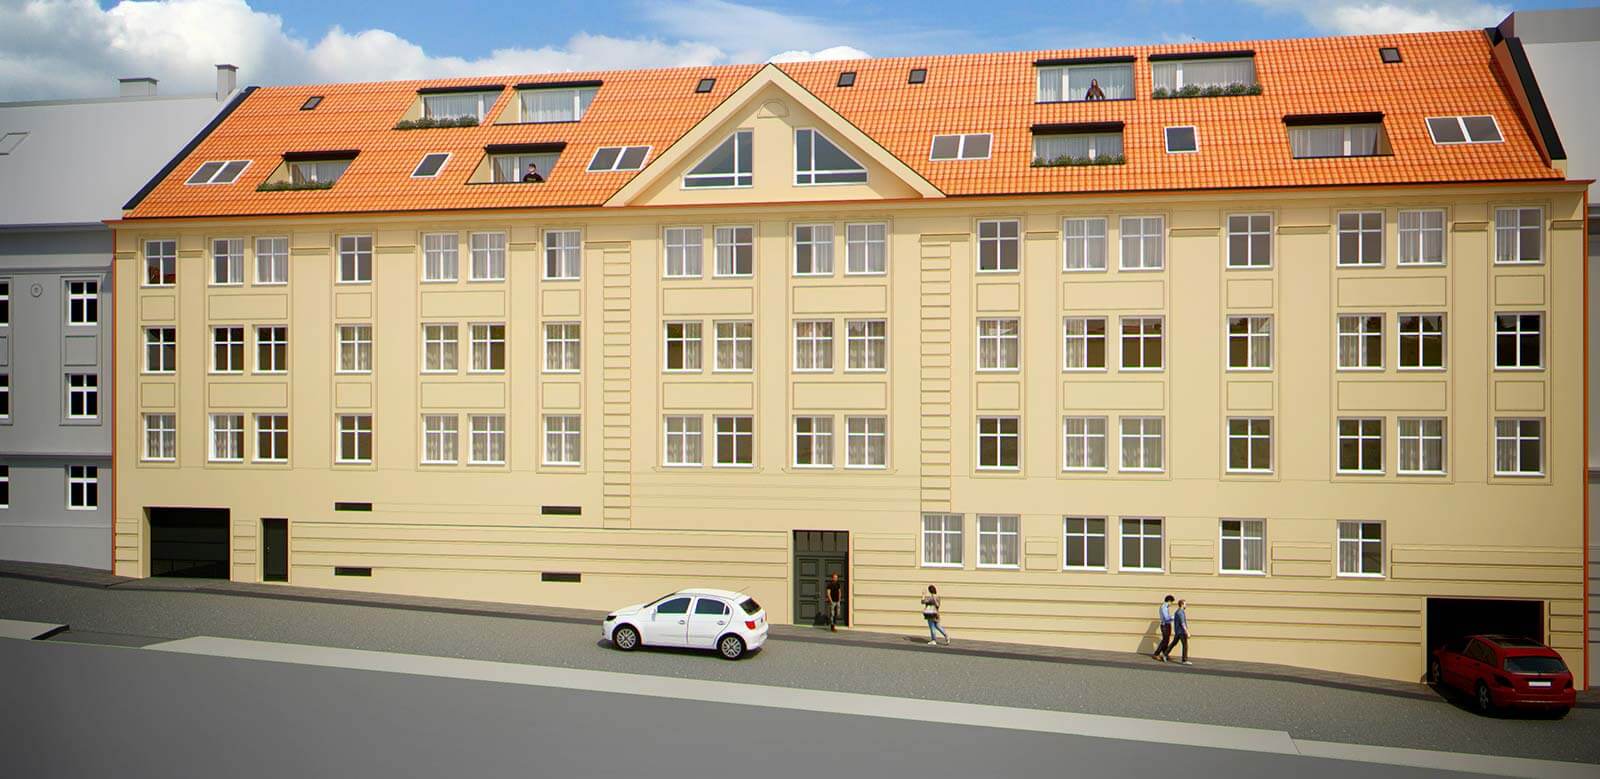 Predané: Novostavba posledný 1 izbový byt, širšie centrum v Bratislave, Beskydská ulica, 44,87m2, štandard, terasa 40m2,-7